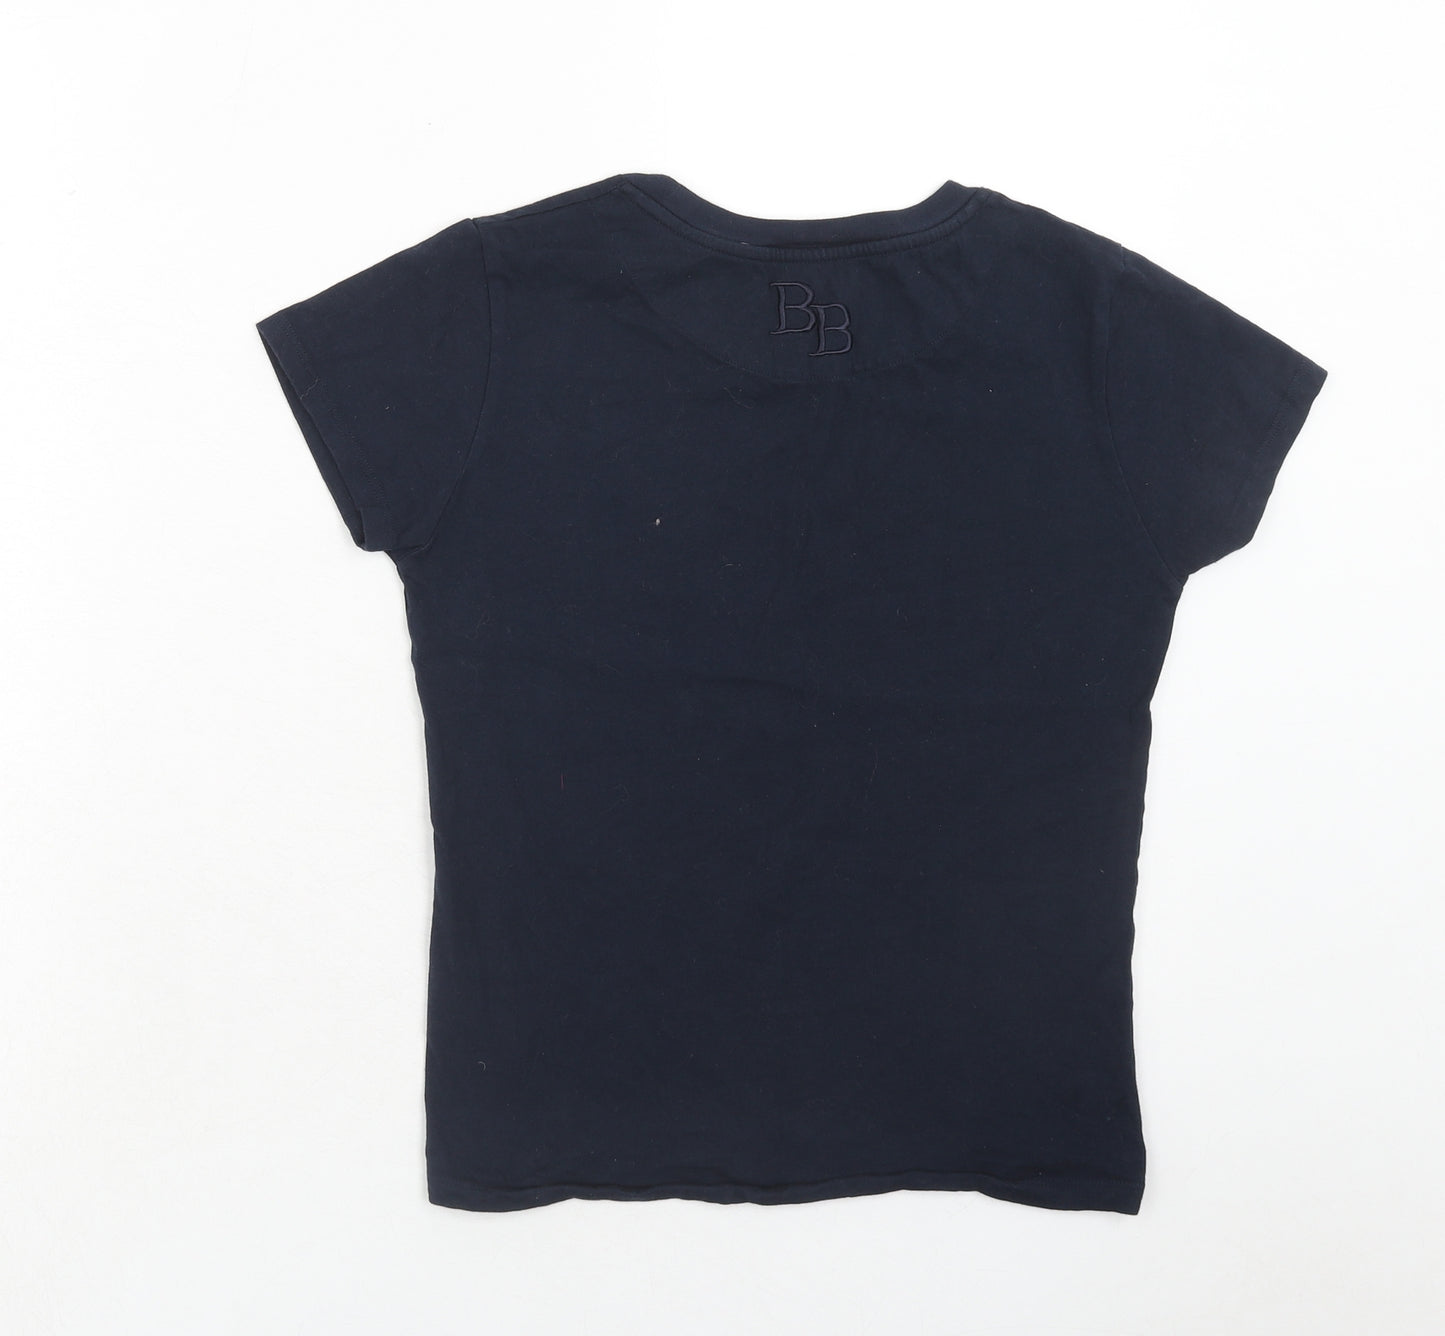 Salcombe Clothing Company Womens Blue Cotton Basic T-Shirt Size S Round Neck